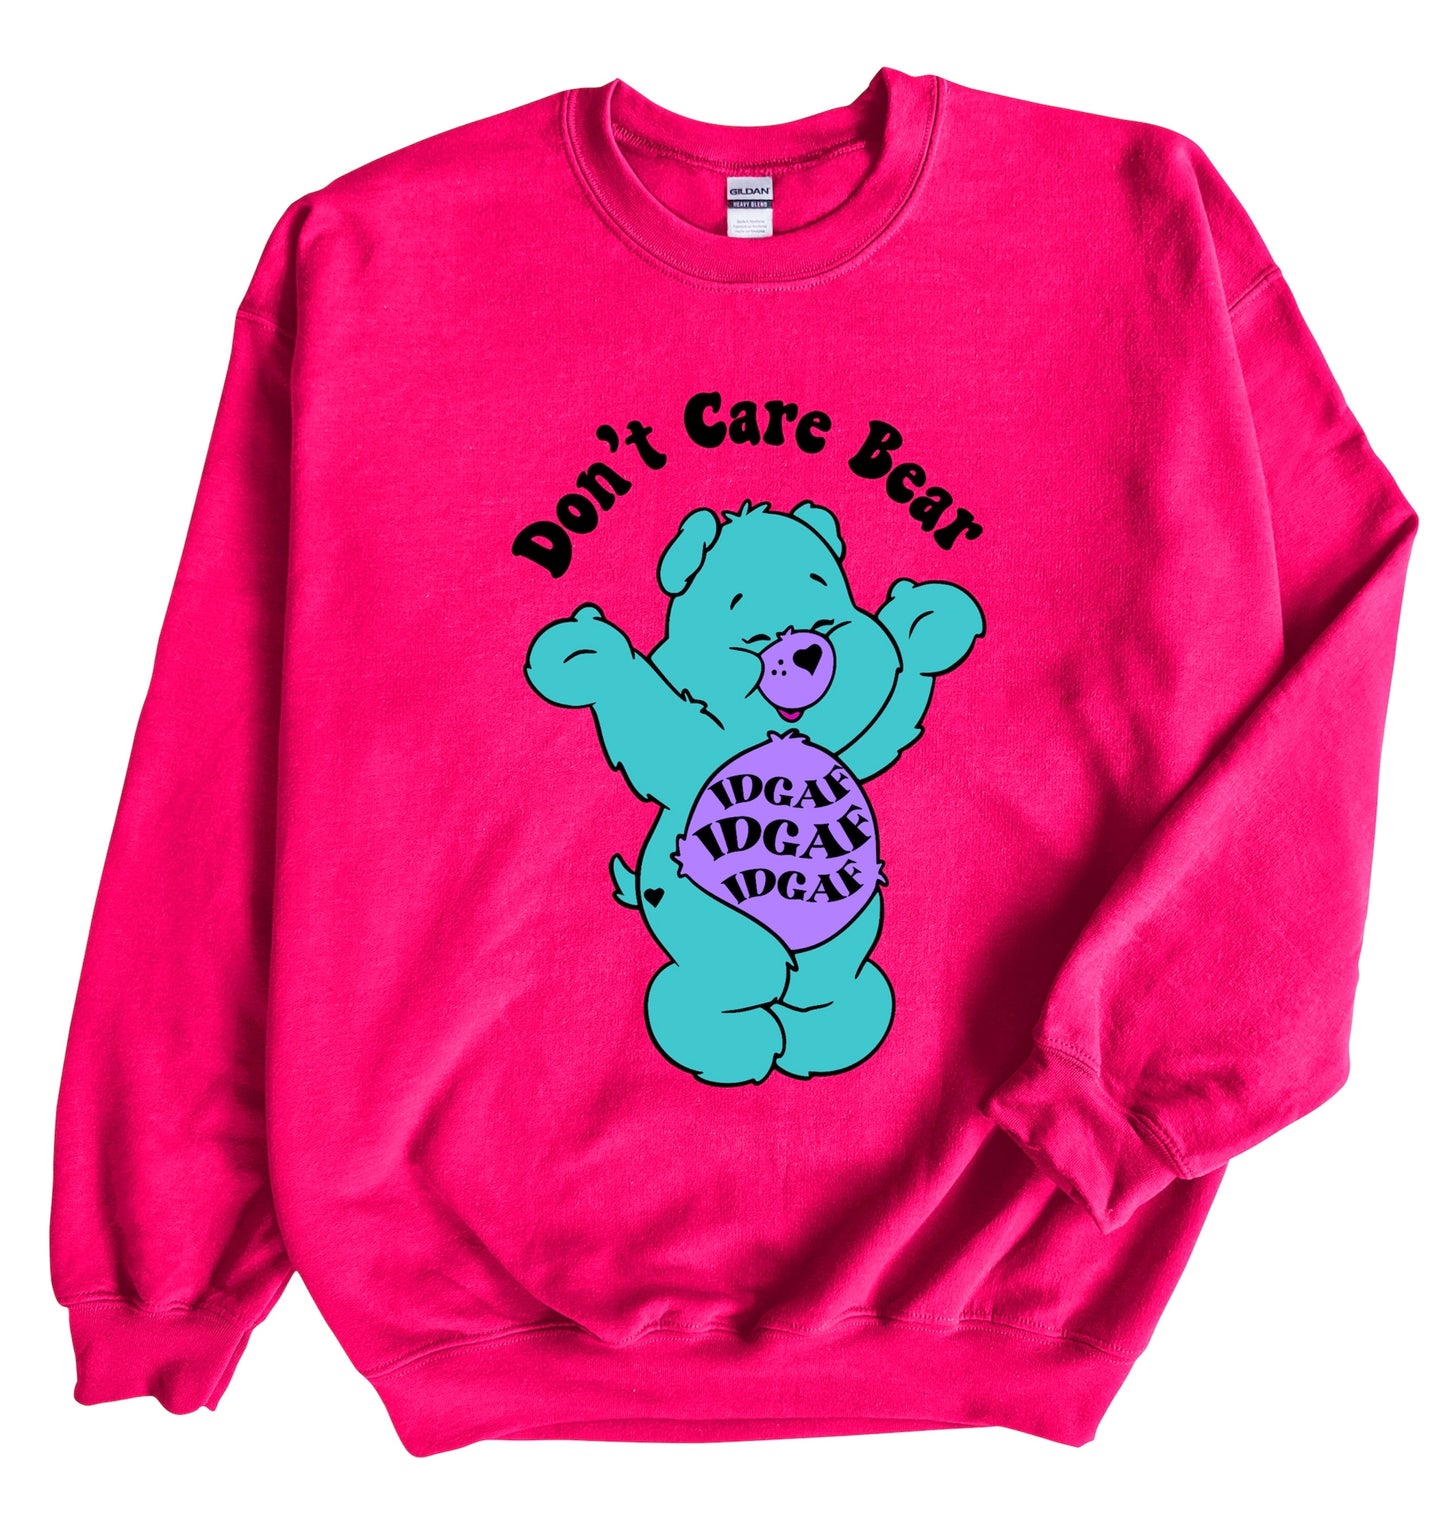 Don’t care Bear IDGAF